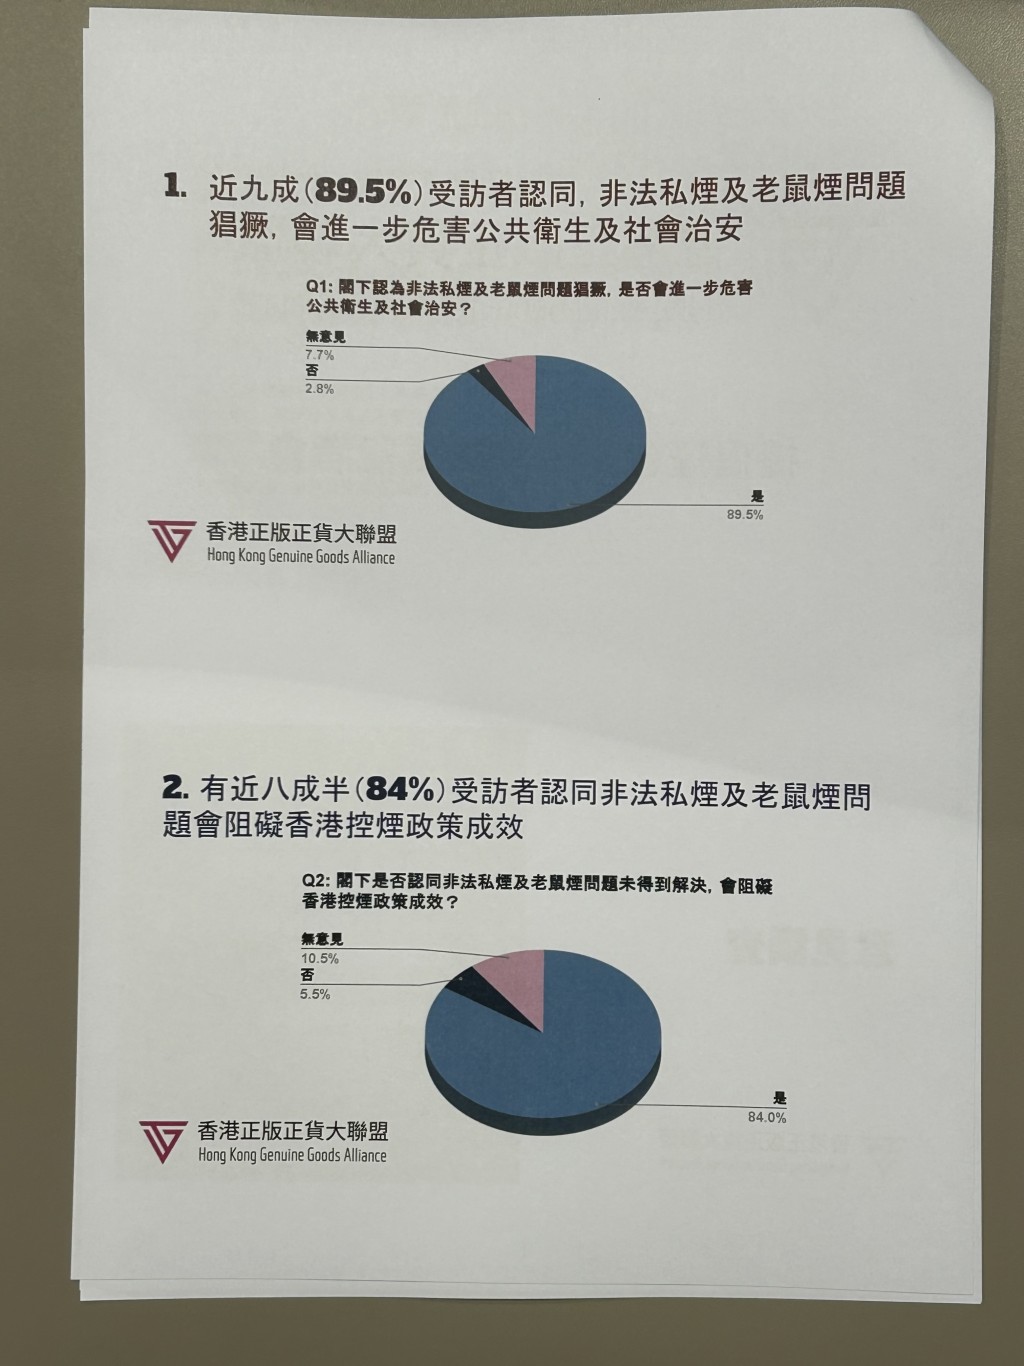 有84%受訪業界認同非法私煙及老鼠煙問題會阻礙香港控煙政策成效。